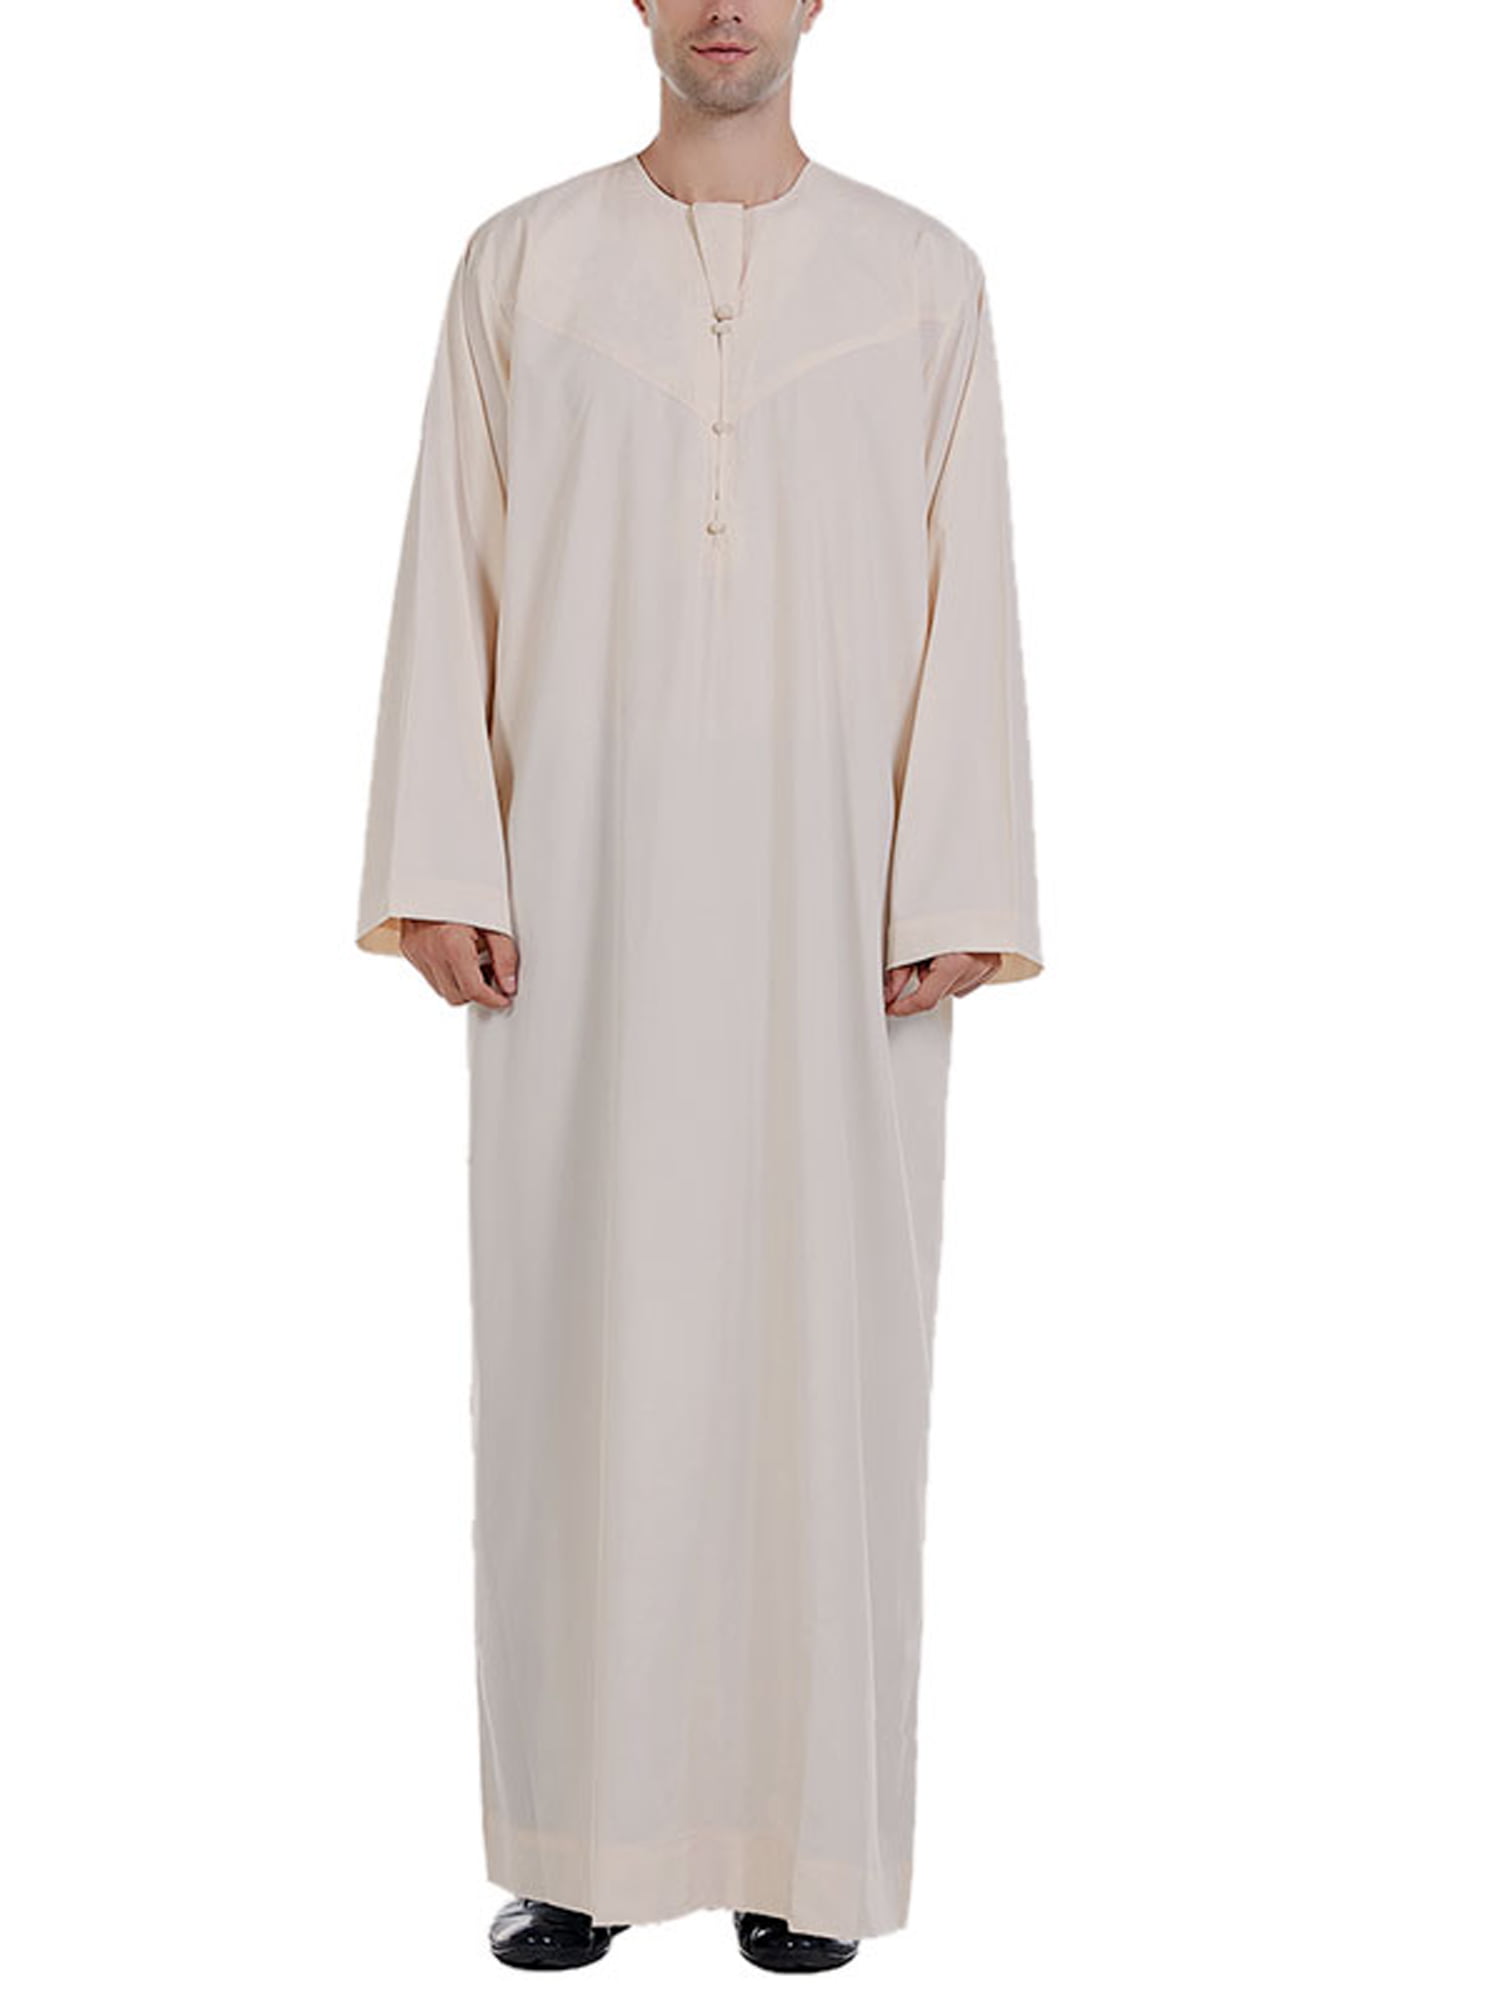 Mens Muslim Jubba Kaftan Long Sleeve Dishdash Thobe Arab Islamic Saudi Robe Tops